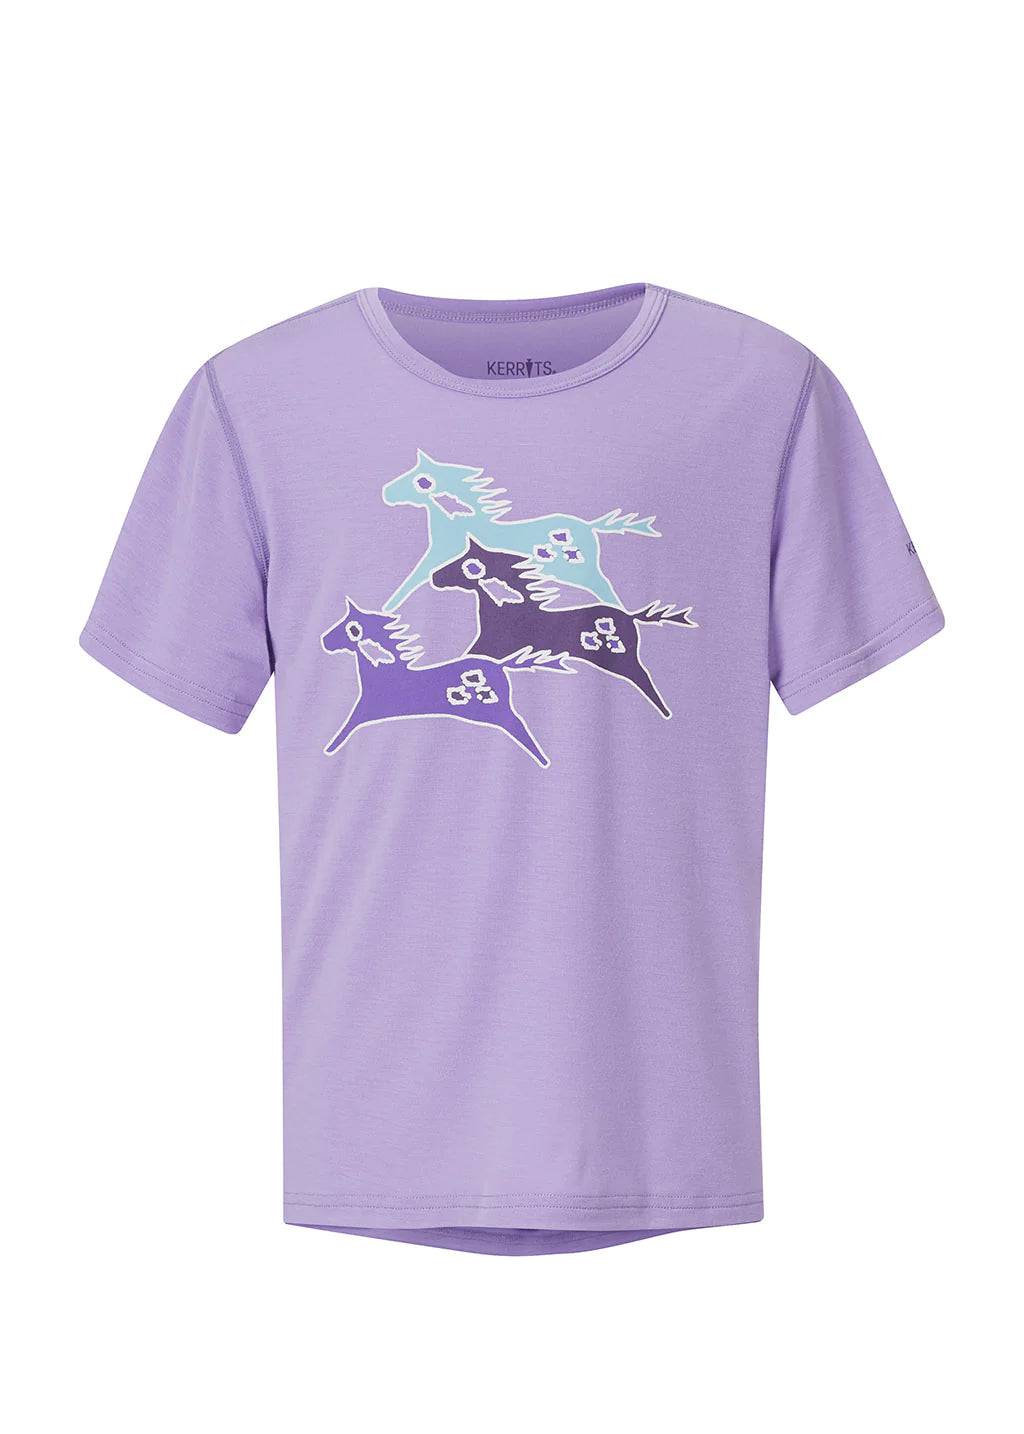 Kerrits Kids Painted Horse Tee Shirt